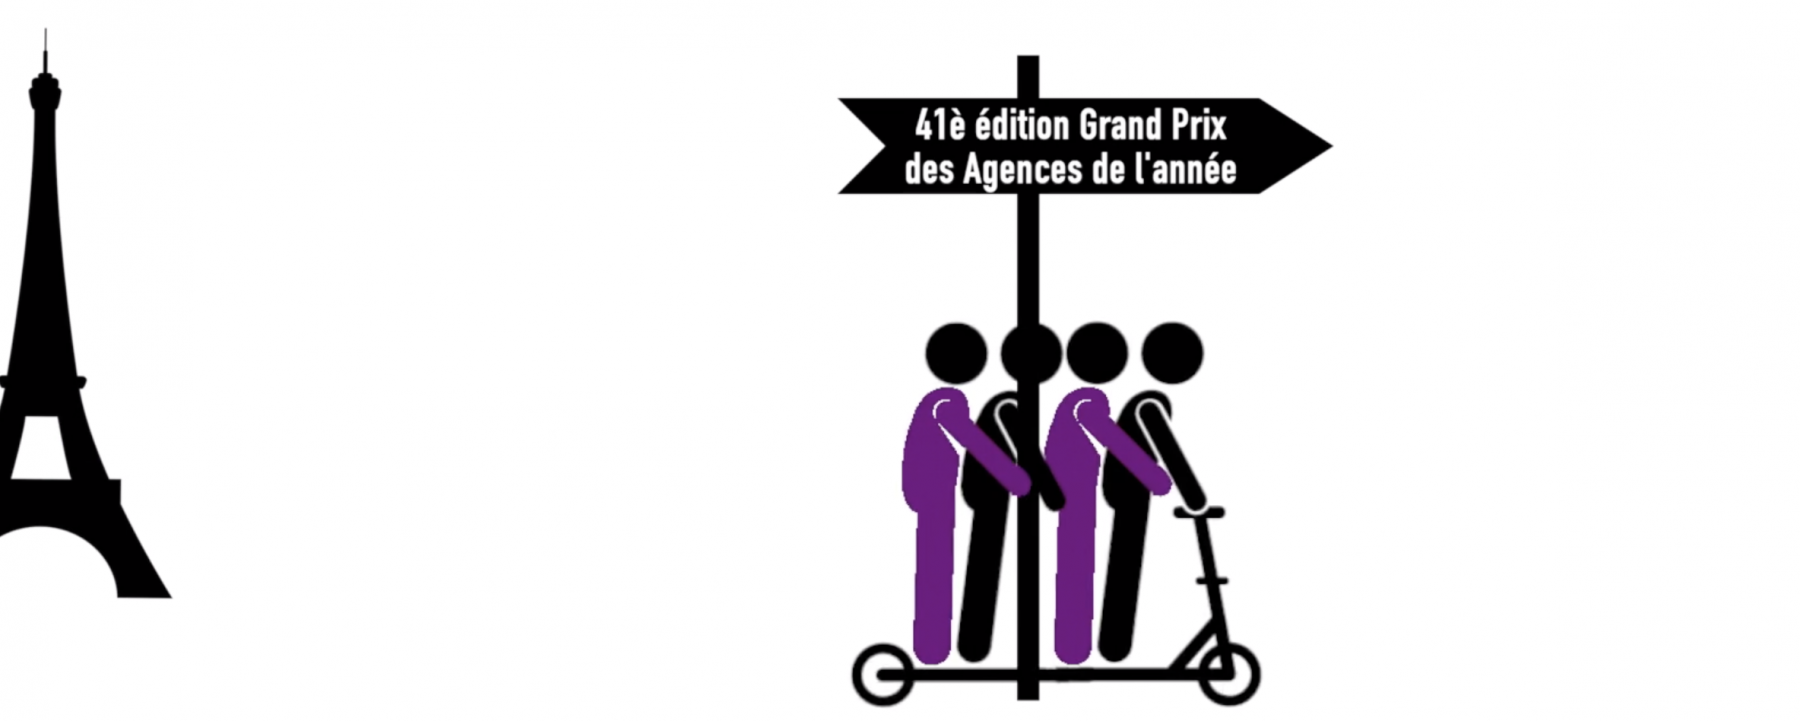 41e Grand Prix des Agences de l'Année, organisé le 15 décembre par Idenium 